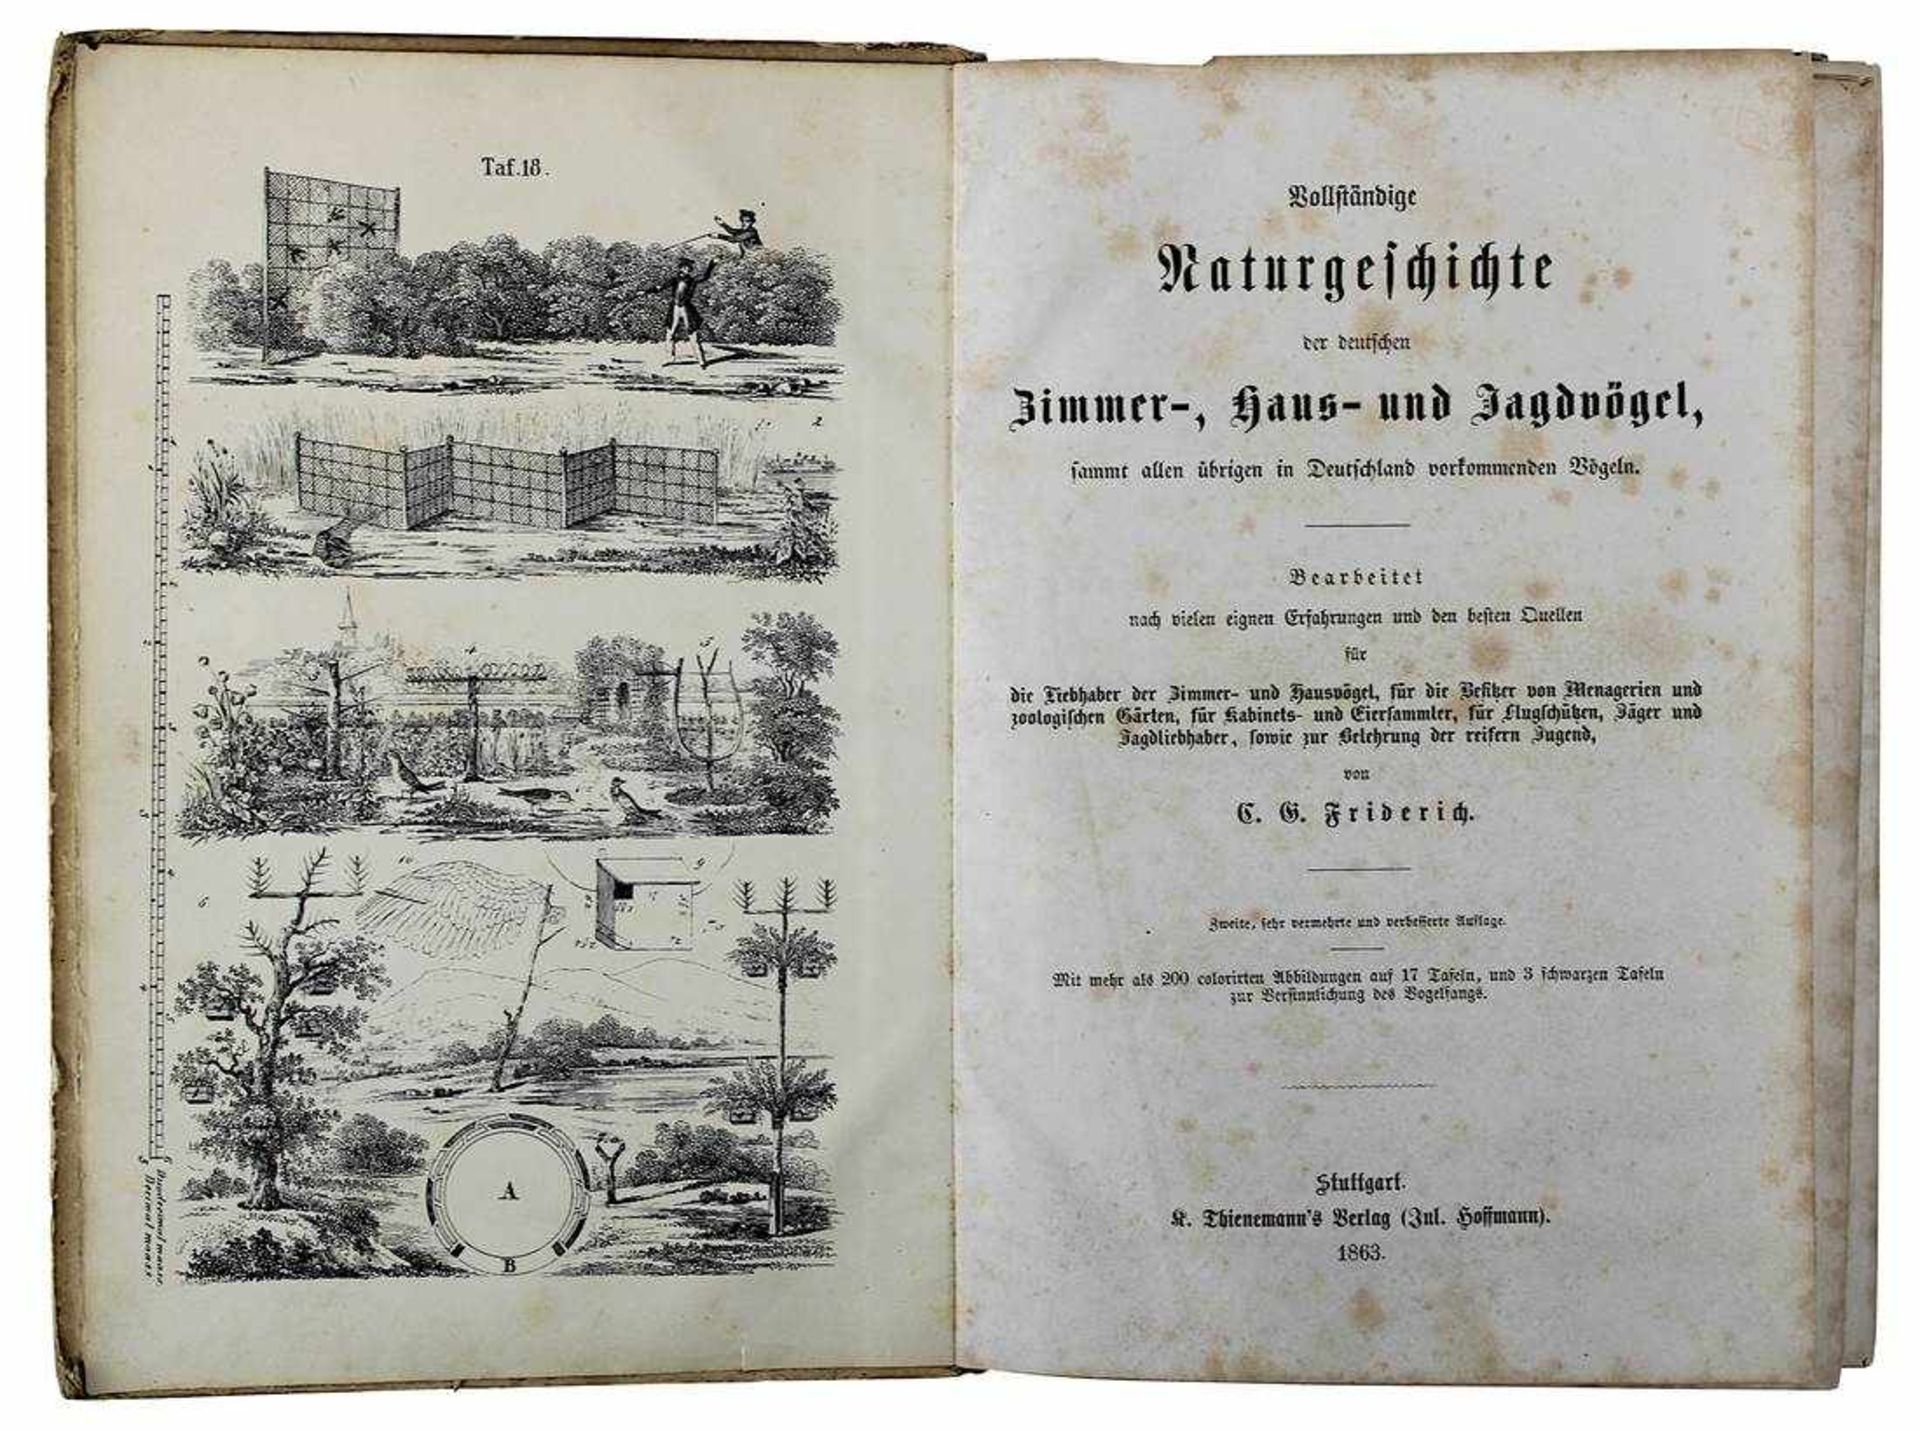 Friderich, C. G., "Naturgeschichte der deutschen Zimmer-, Haus- und Jagdvögel, samt allen übrigen in